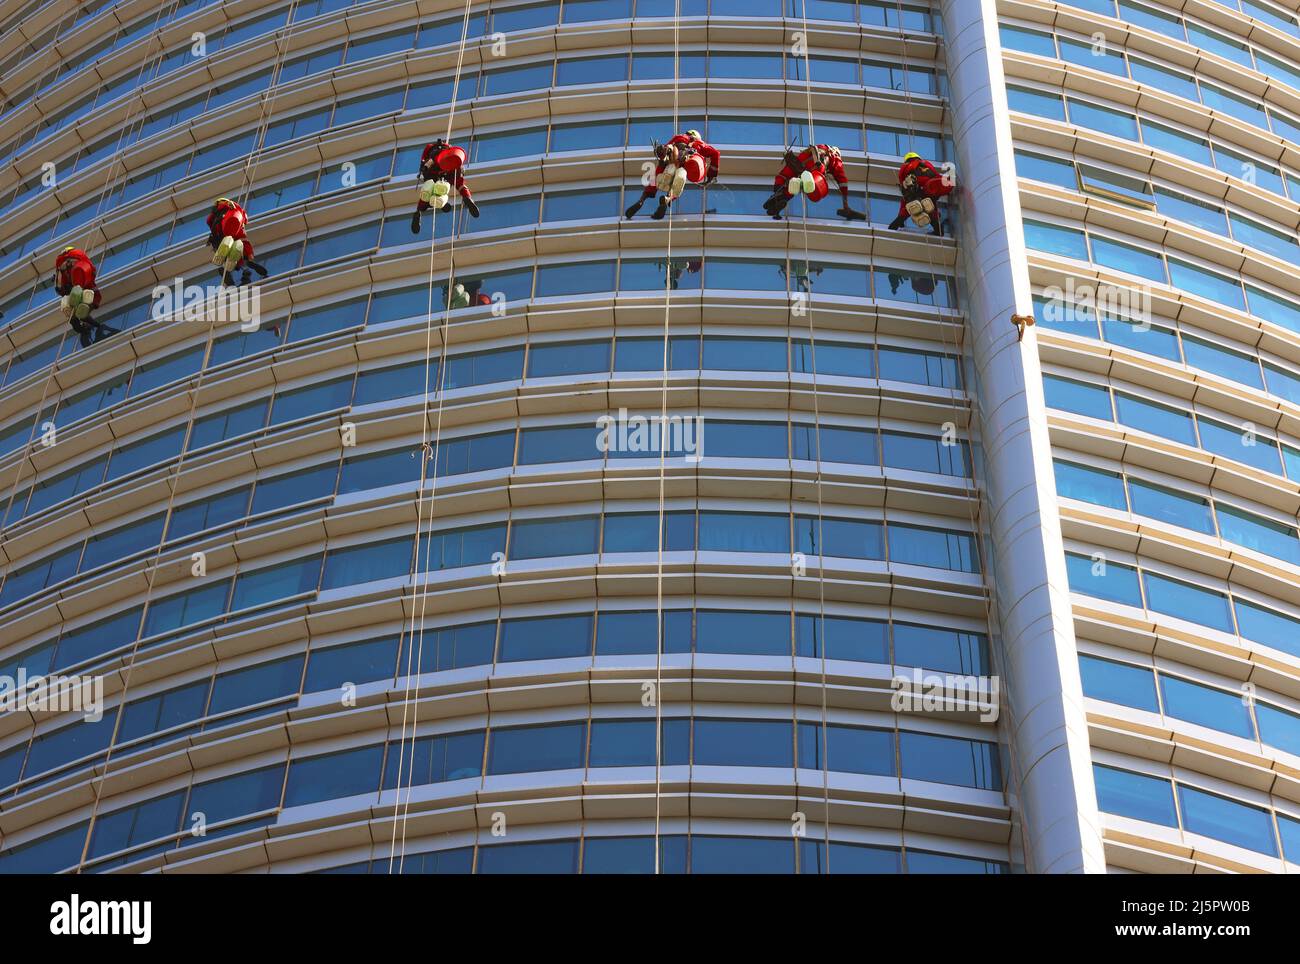 Dubai,  moderne Architektur, Fensterputzer reinigen oder waschen die Fenster an einem Wolkenkratzer mit atemberaubender Aussicht  auf die Skyline Stock Photo